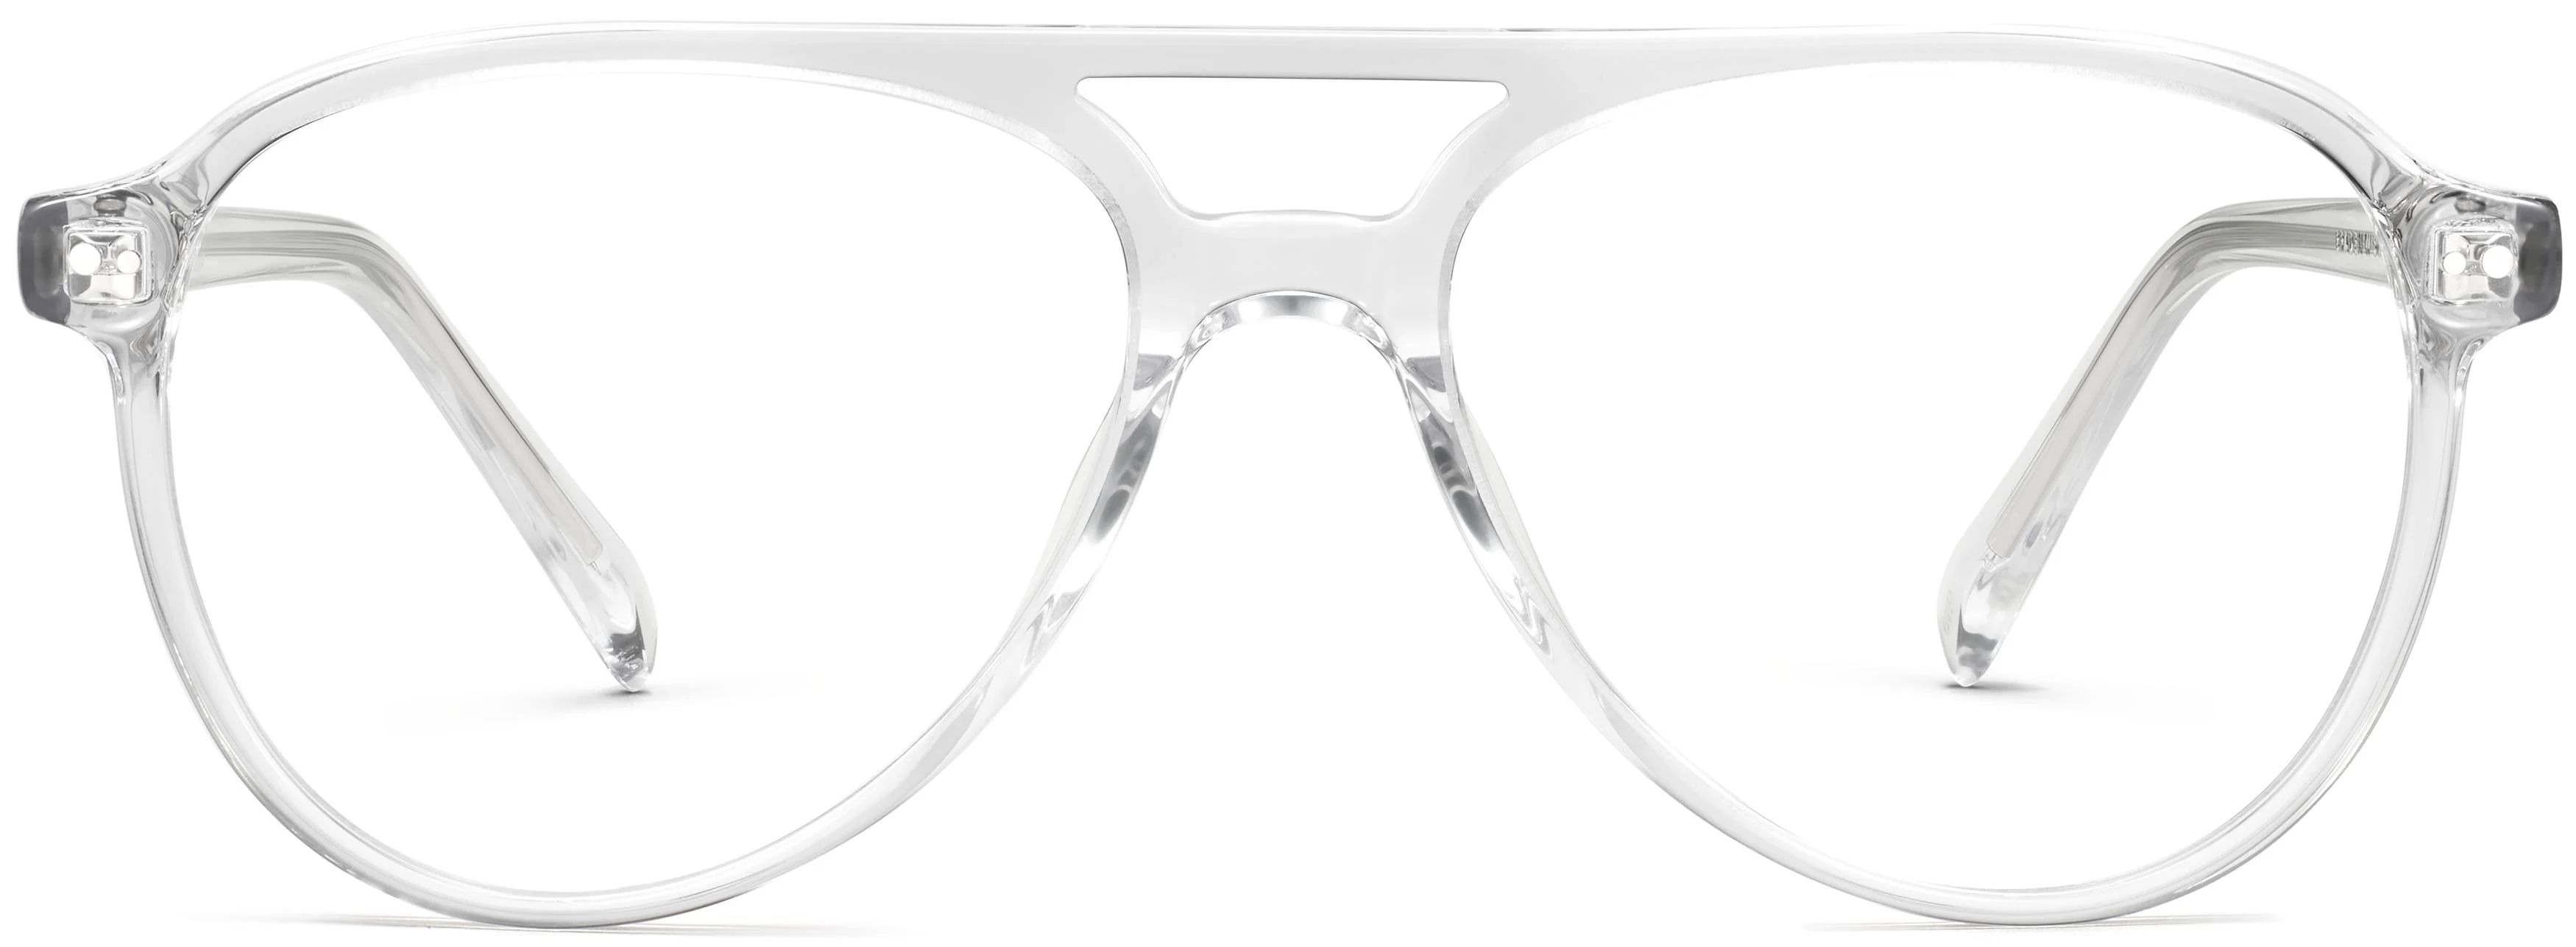 Braden Eyeglasses in Crystal | Warby Parker | Warby Parker (US)